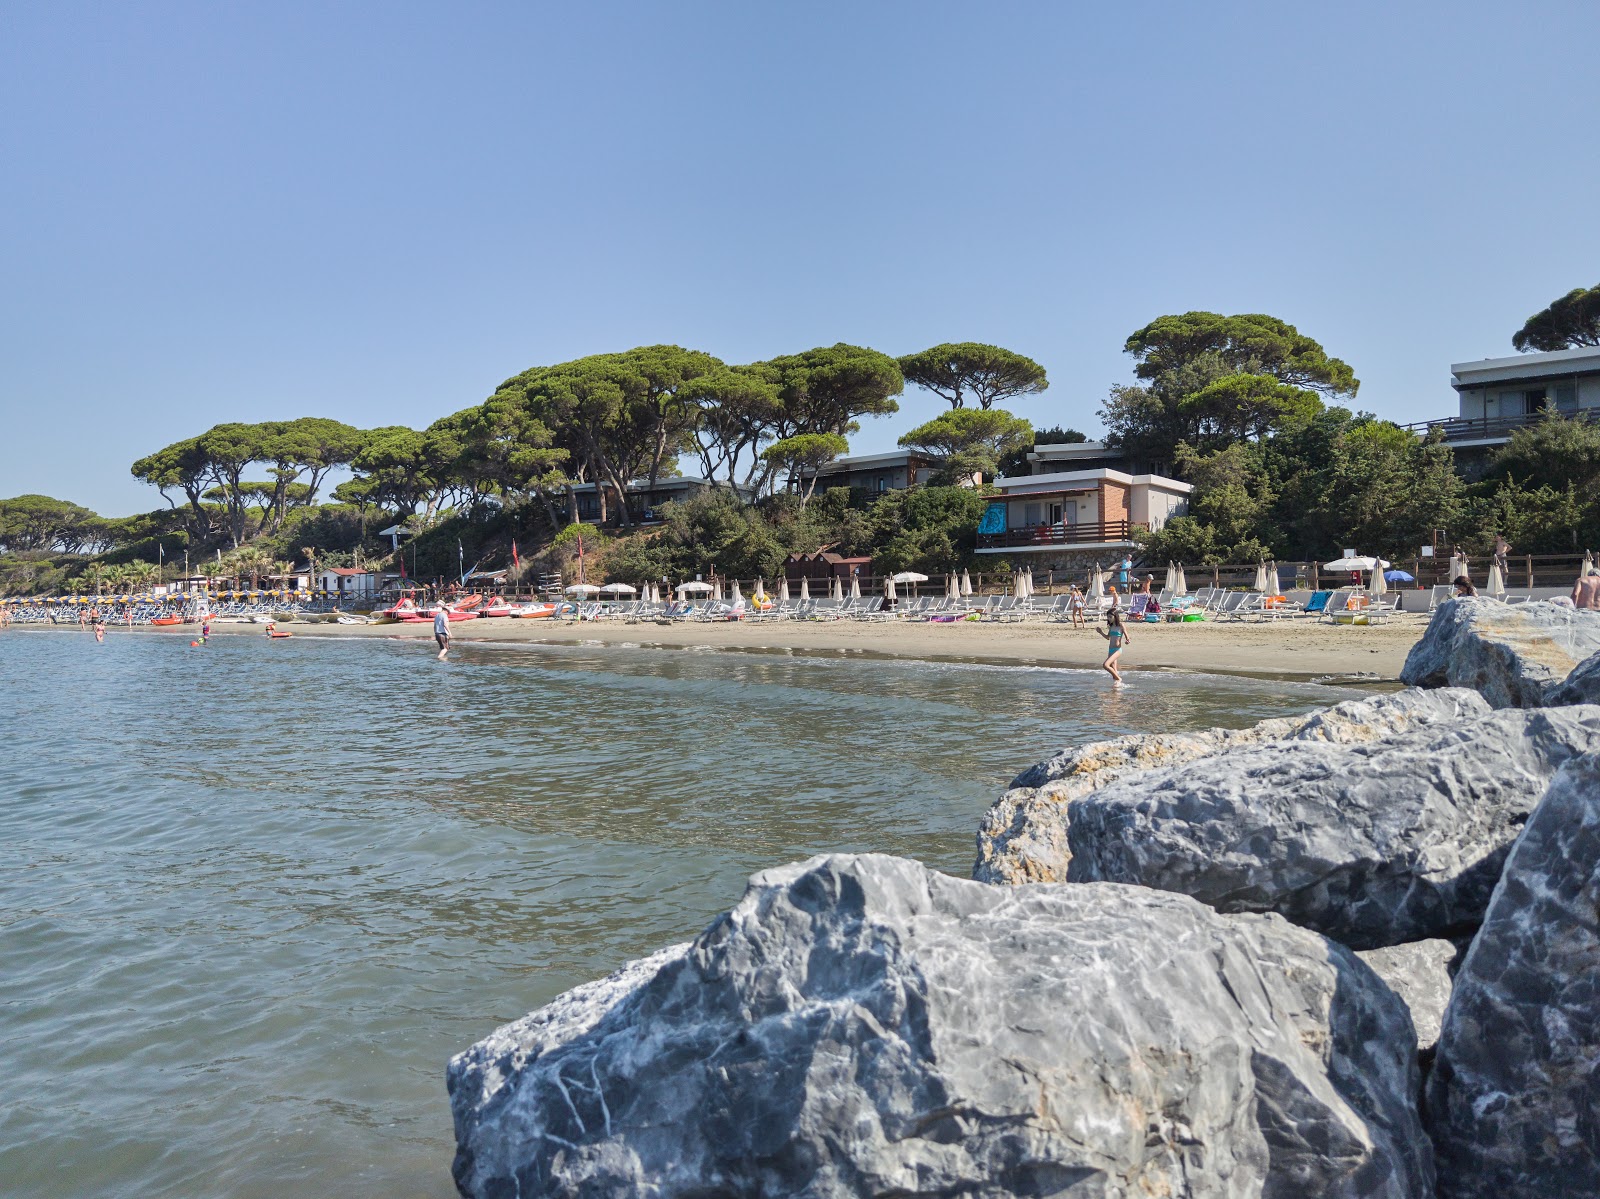 Photo de Spiaggia Golfo del Sole - endroit populaire parmi les connaisseurs de la détente